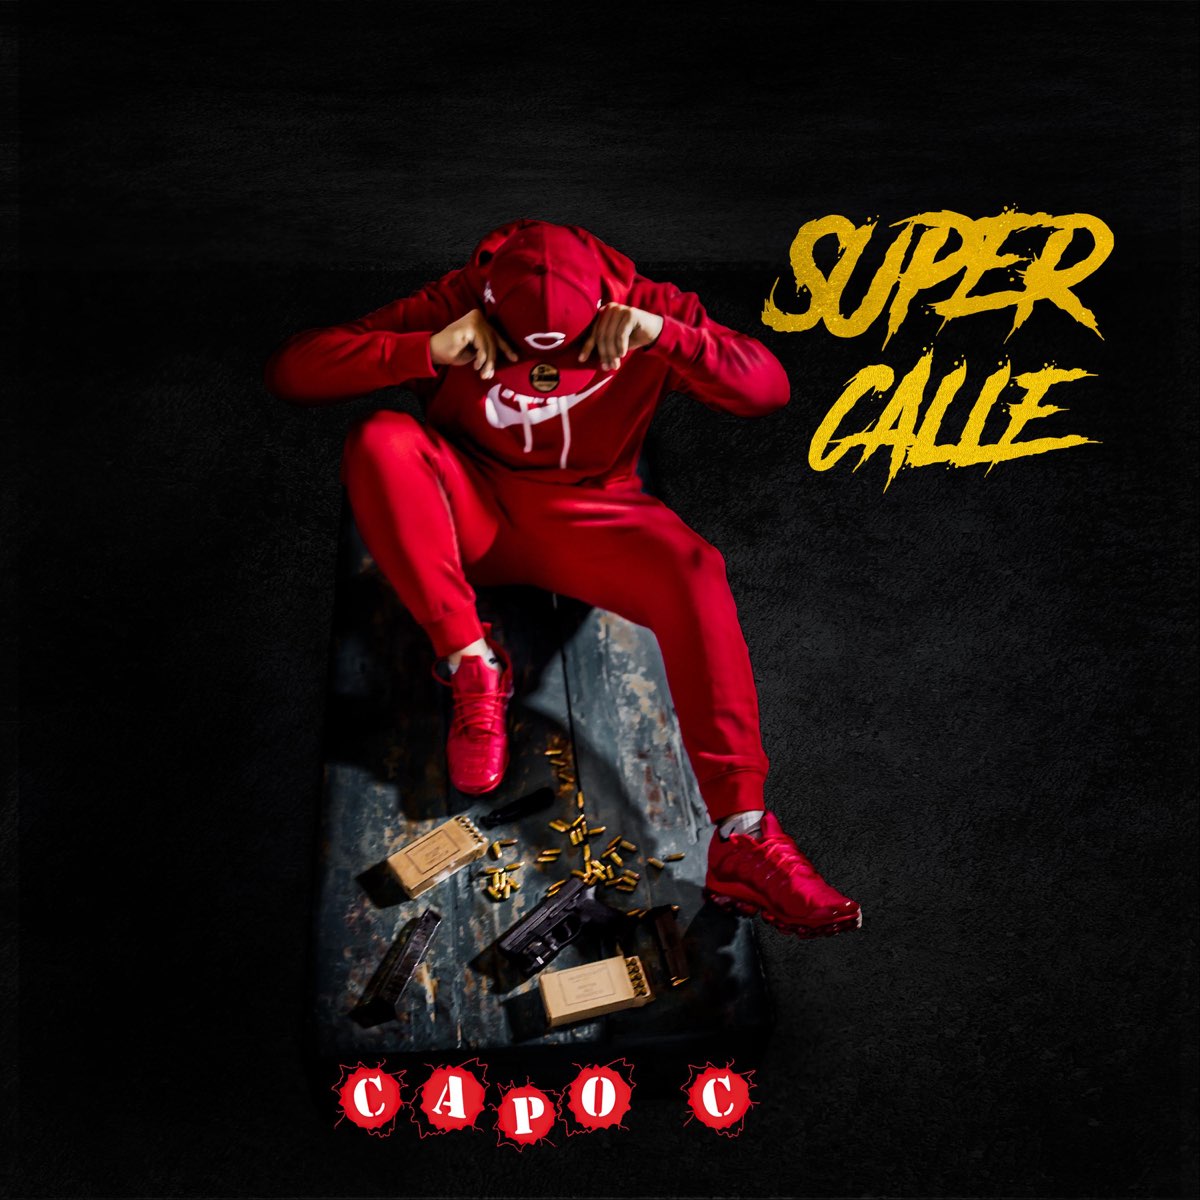 ‎Super Calle - Single - Album by Capo C - Apple Music